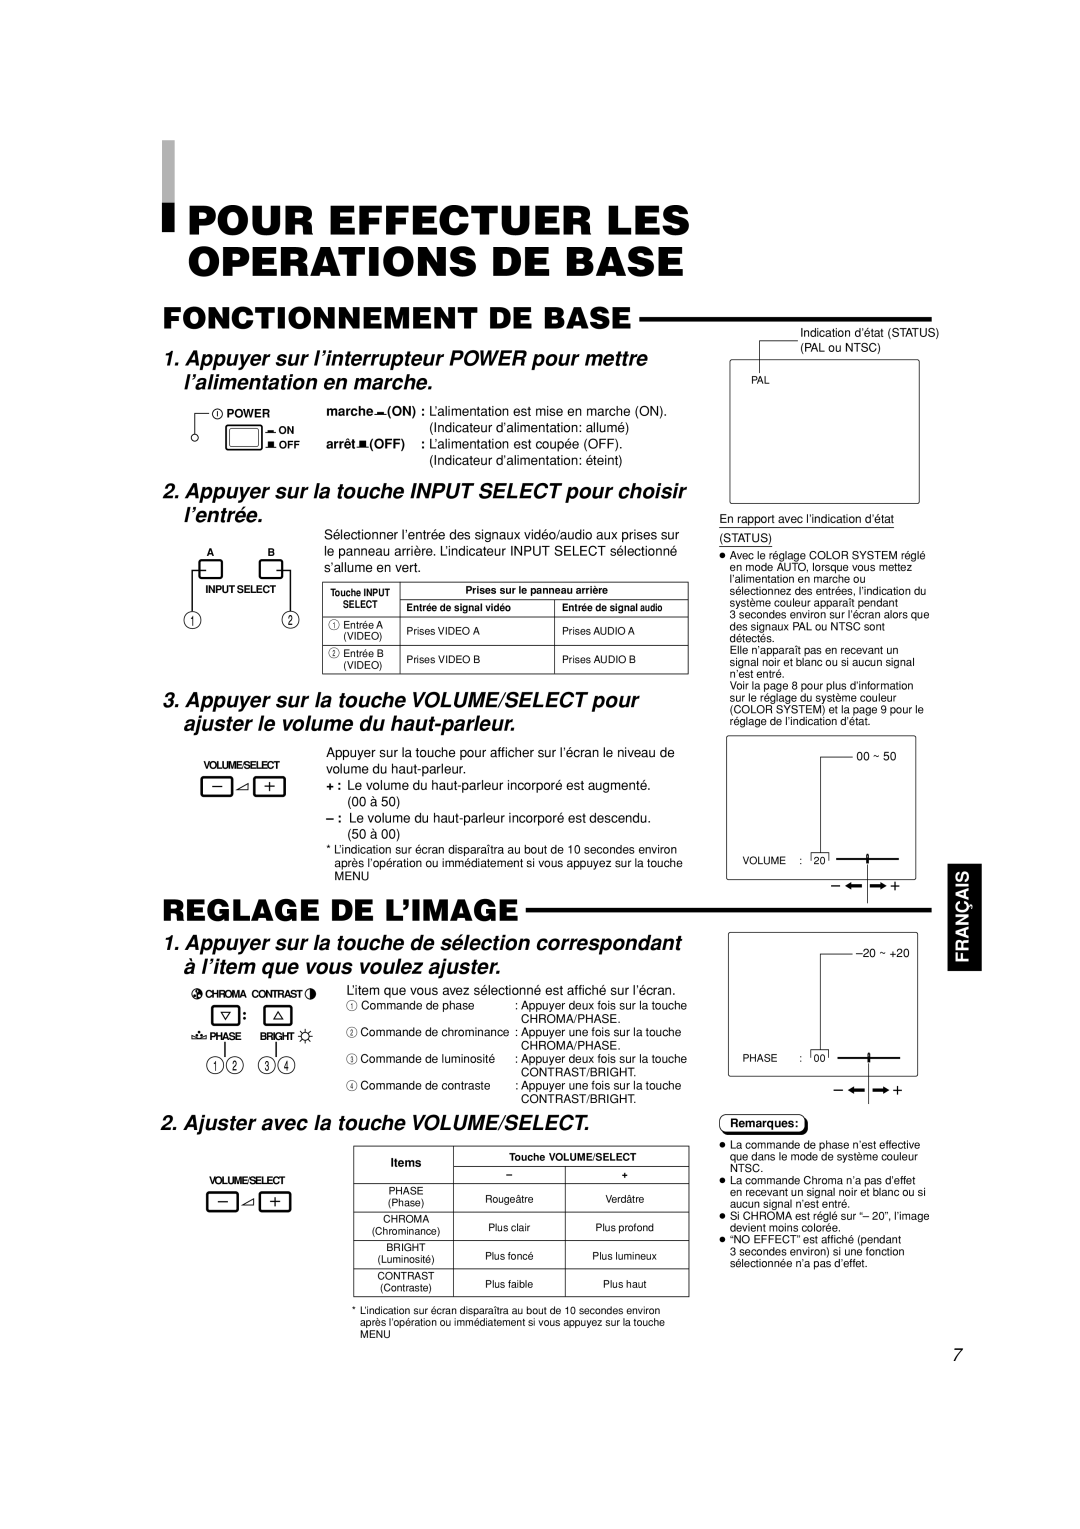 JVC TM-A101G manual Pour Effectuer Les Operations De Base, Fonctionnement De Base, Reglage De L’Image, Fran 